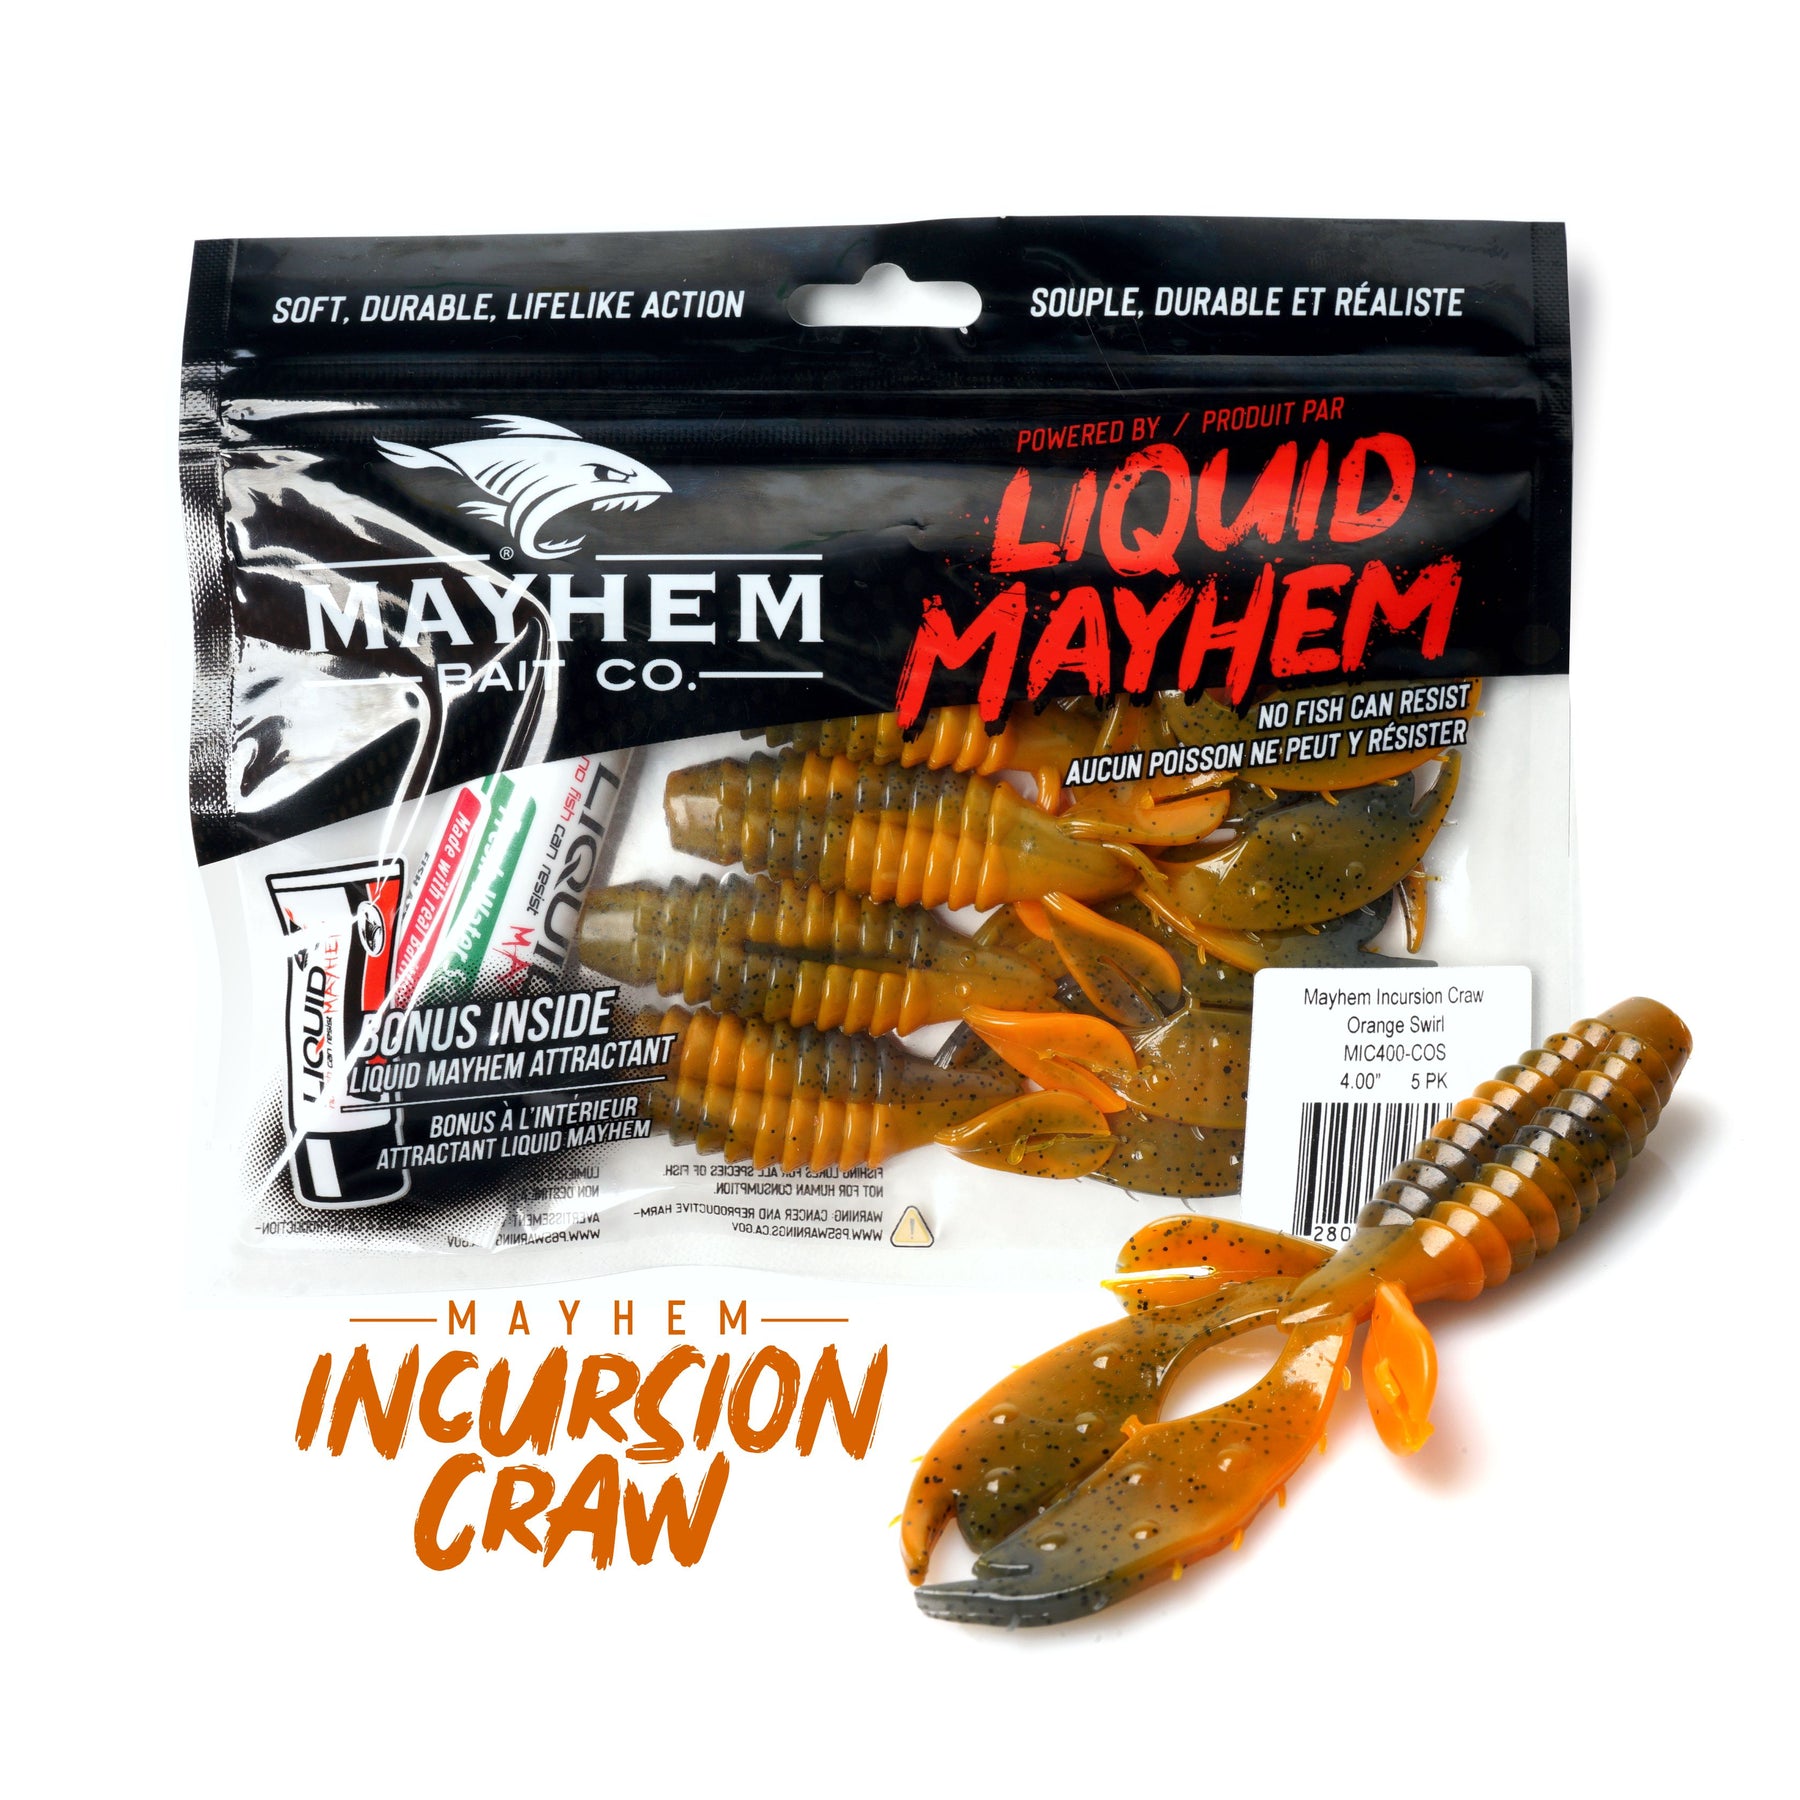 Mayhem Incursion Craw – LIQUID MAYHEM